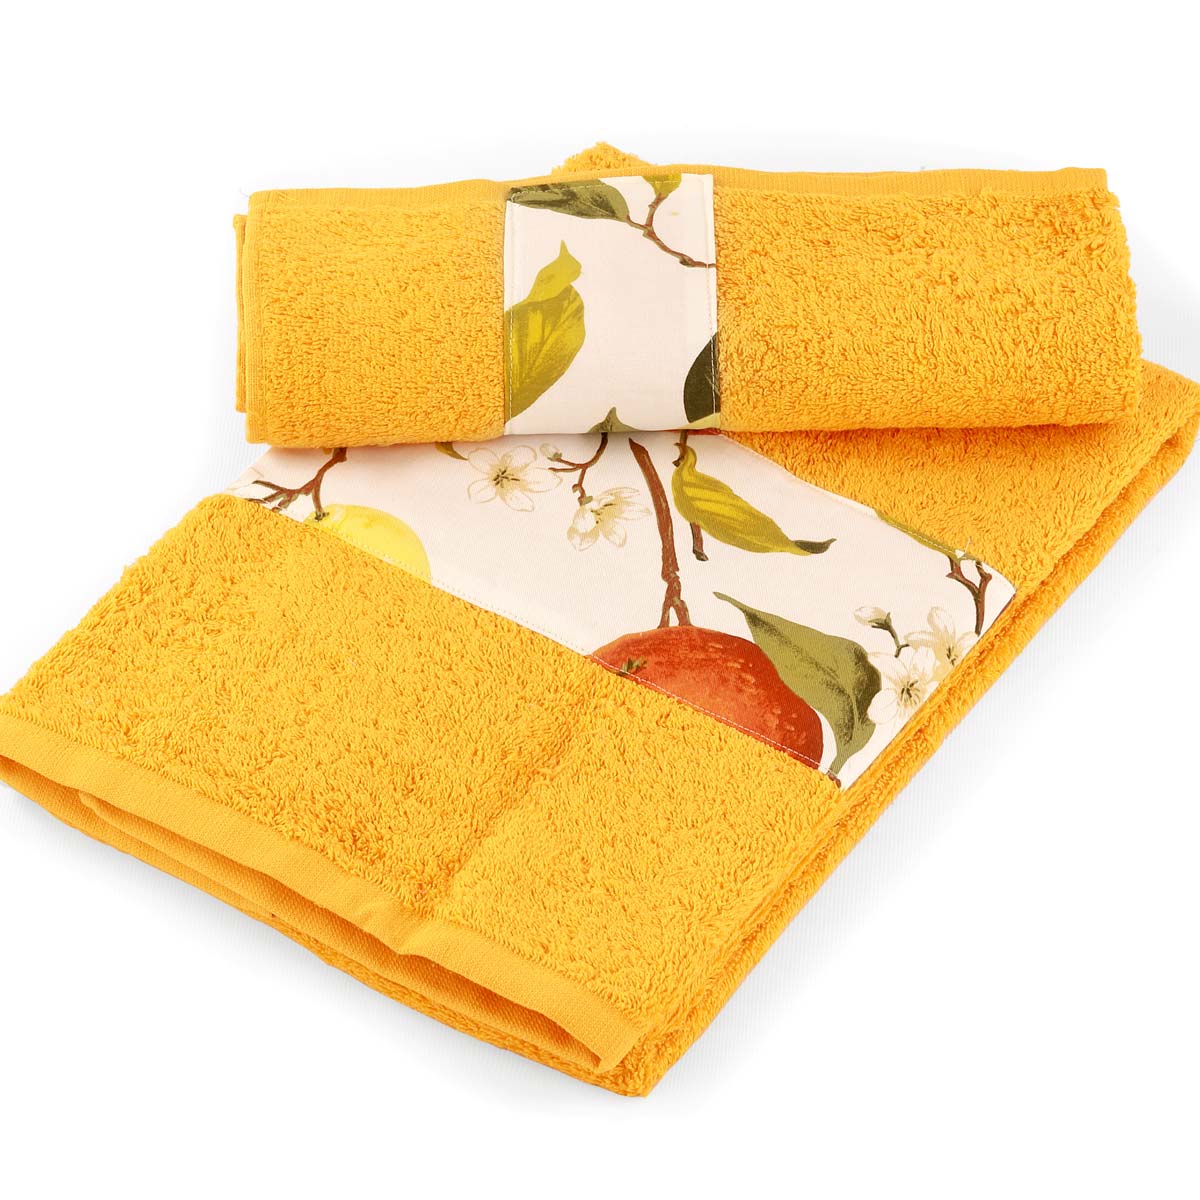 Coppia asciugamani bagno di colore arancio con balza Agrumi